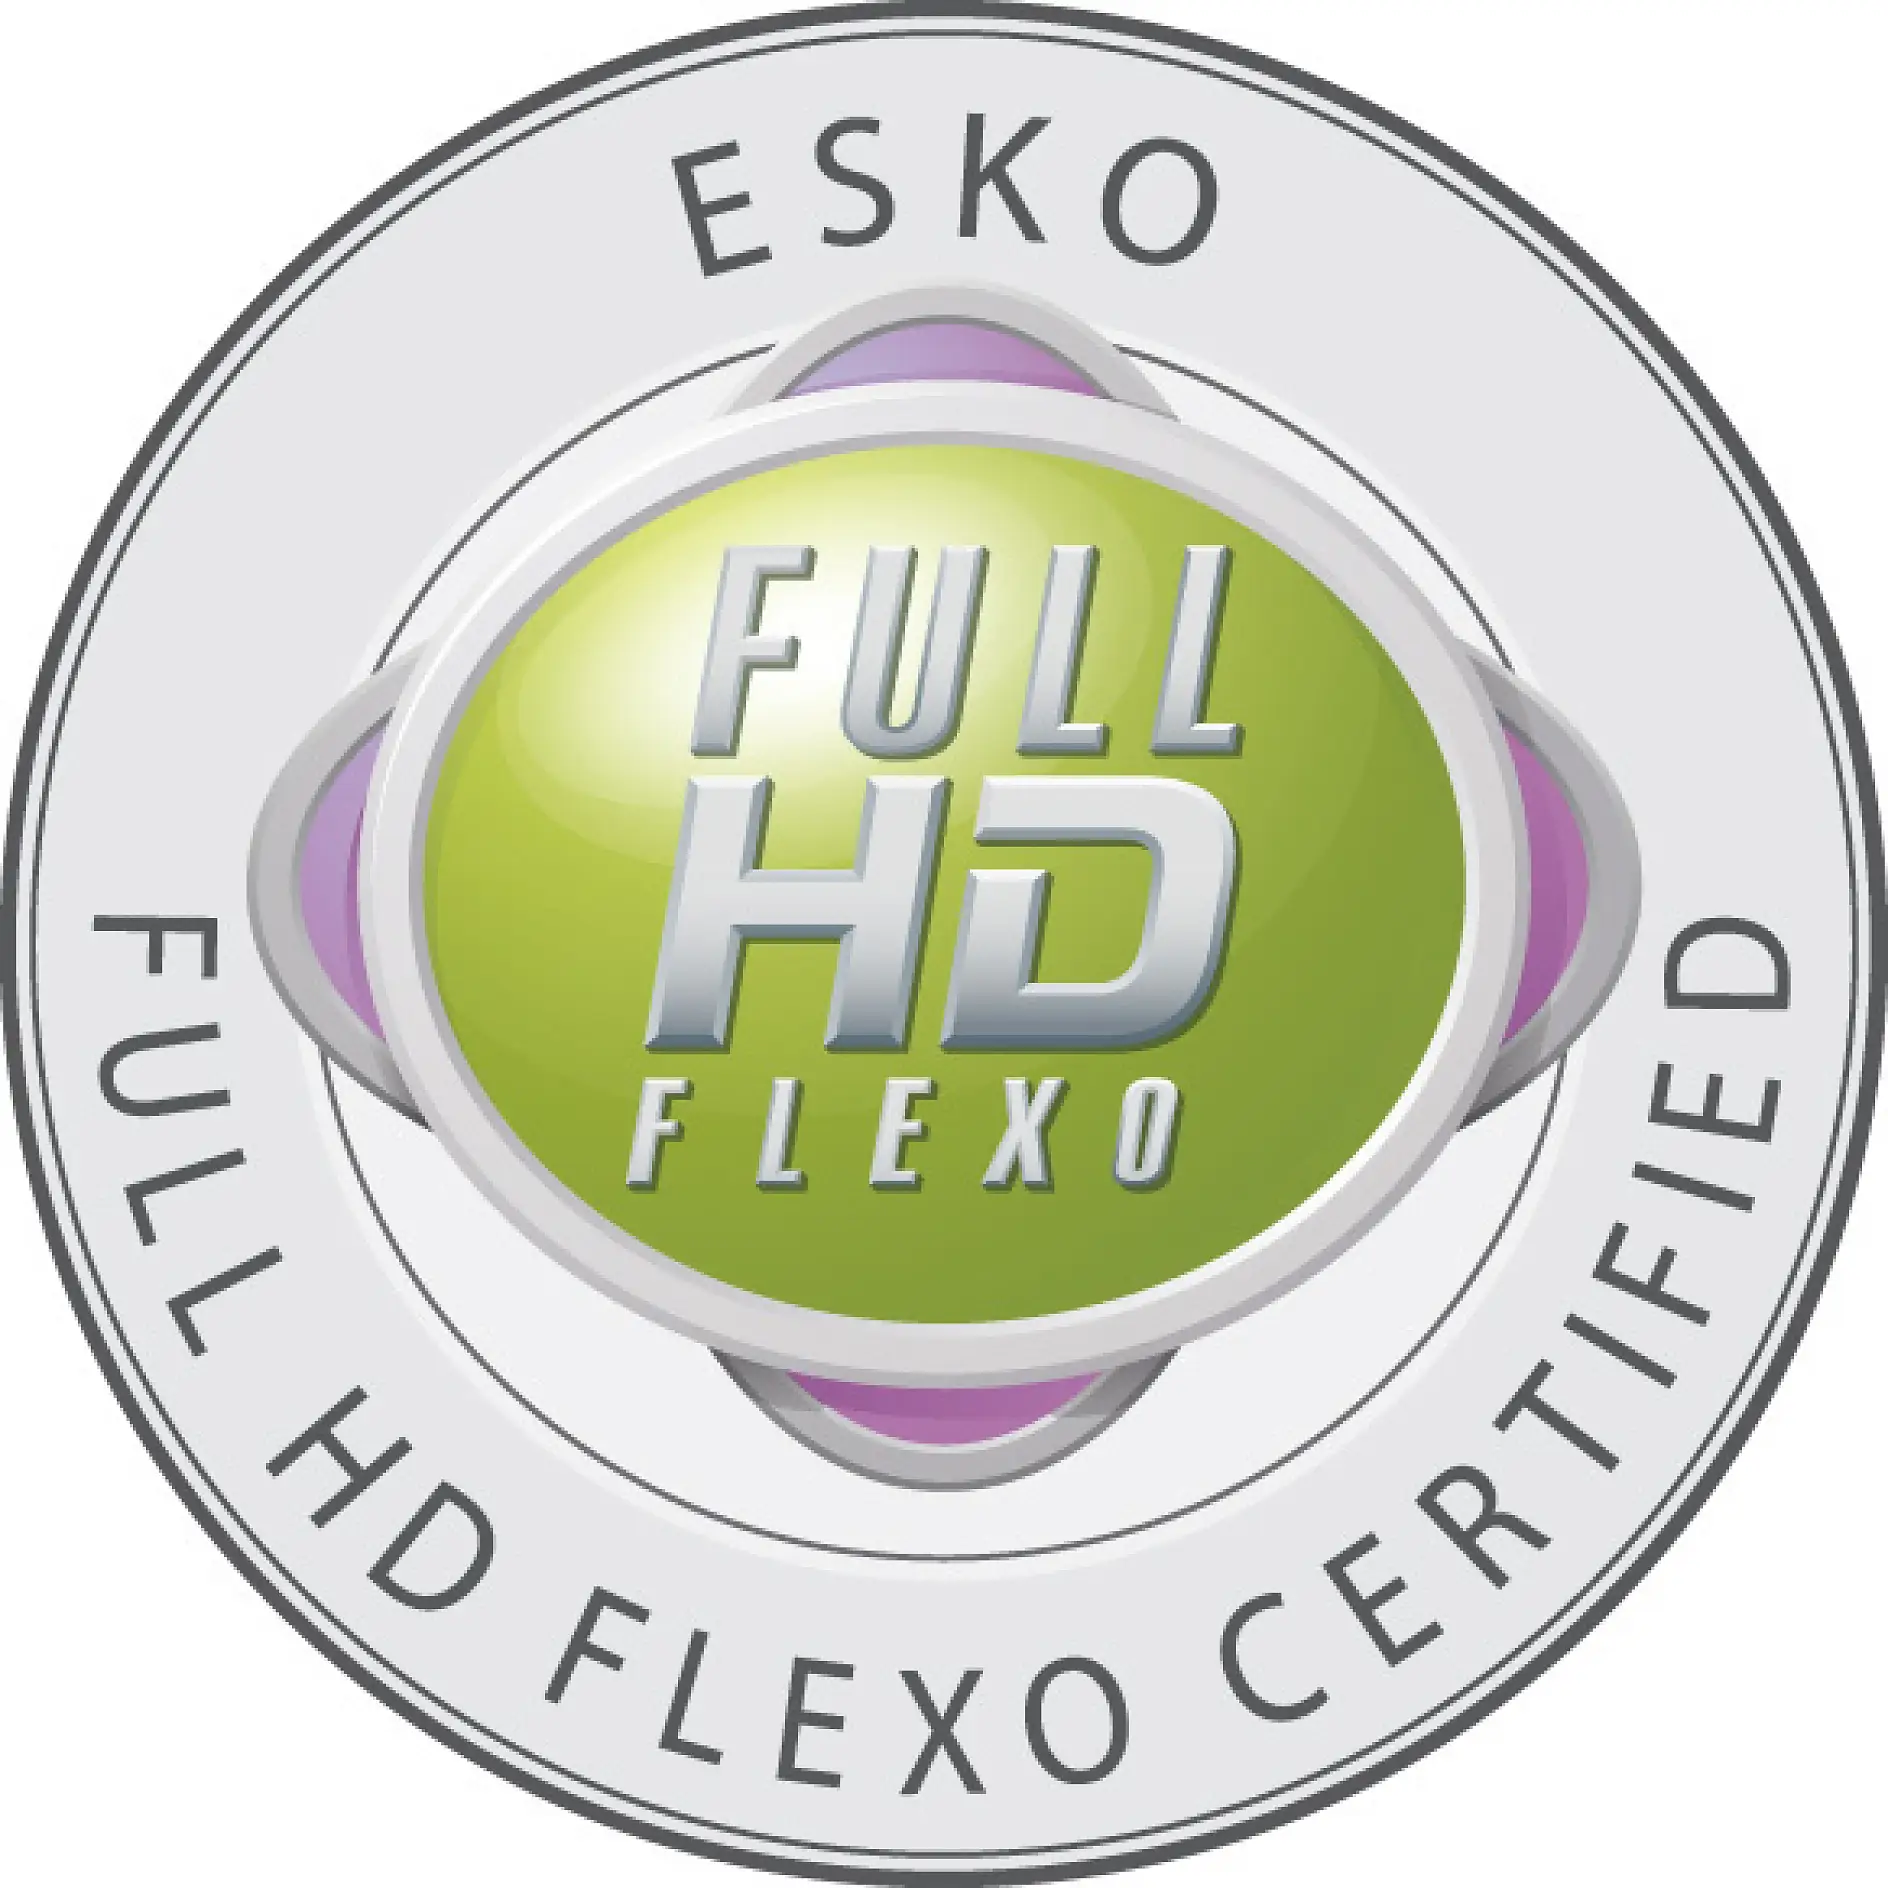 フルHDフレキソ印刷のバッジは、認証を受けた企業にだけ表示することが許されます